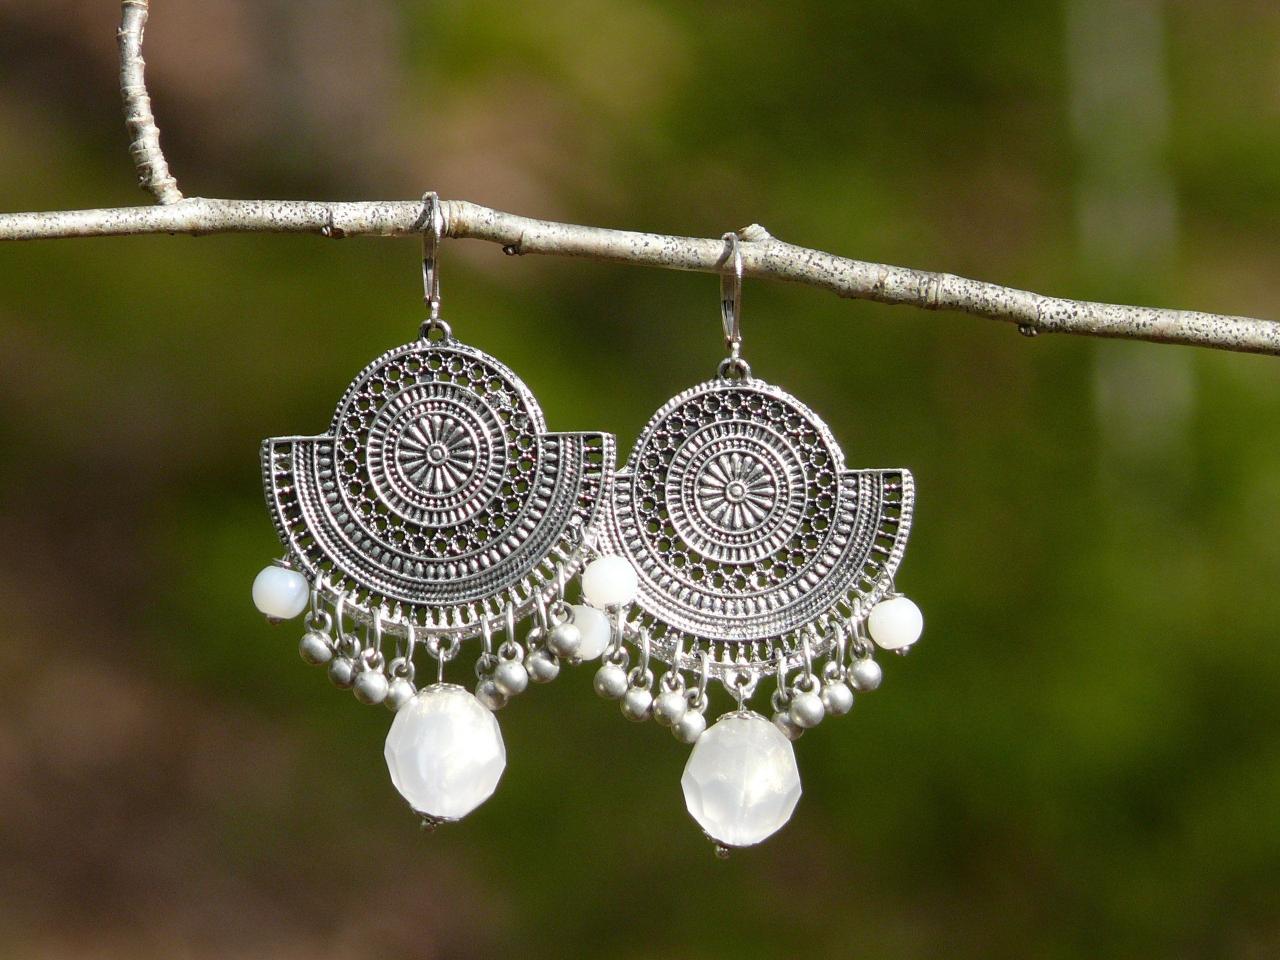 Milky White Wedding Earrings, Large Silver Filigree Chandelier Earrings, White Dangle Earrings, Fan Shaped Ethnic Chandeliers, Gift For Her